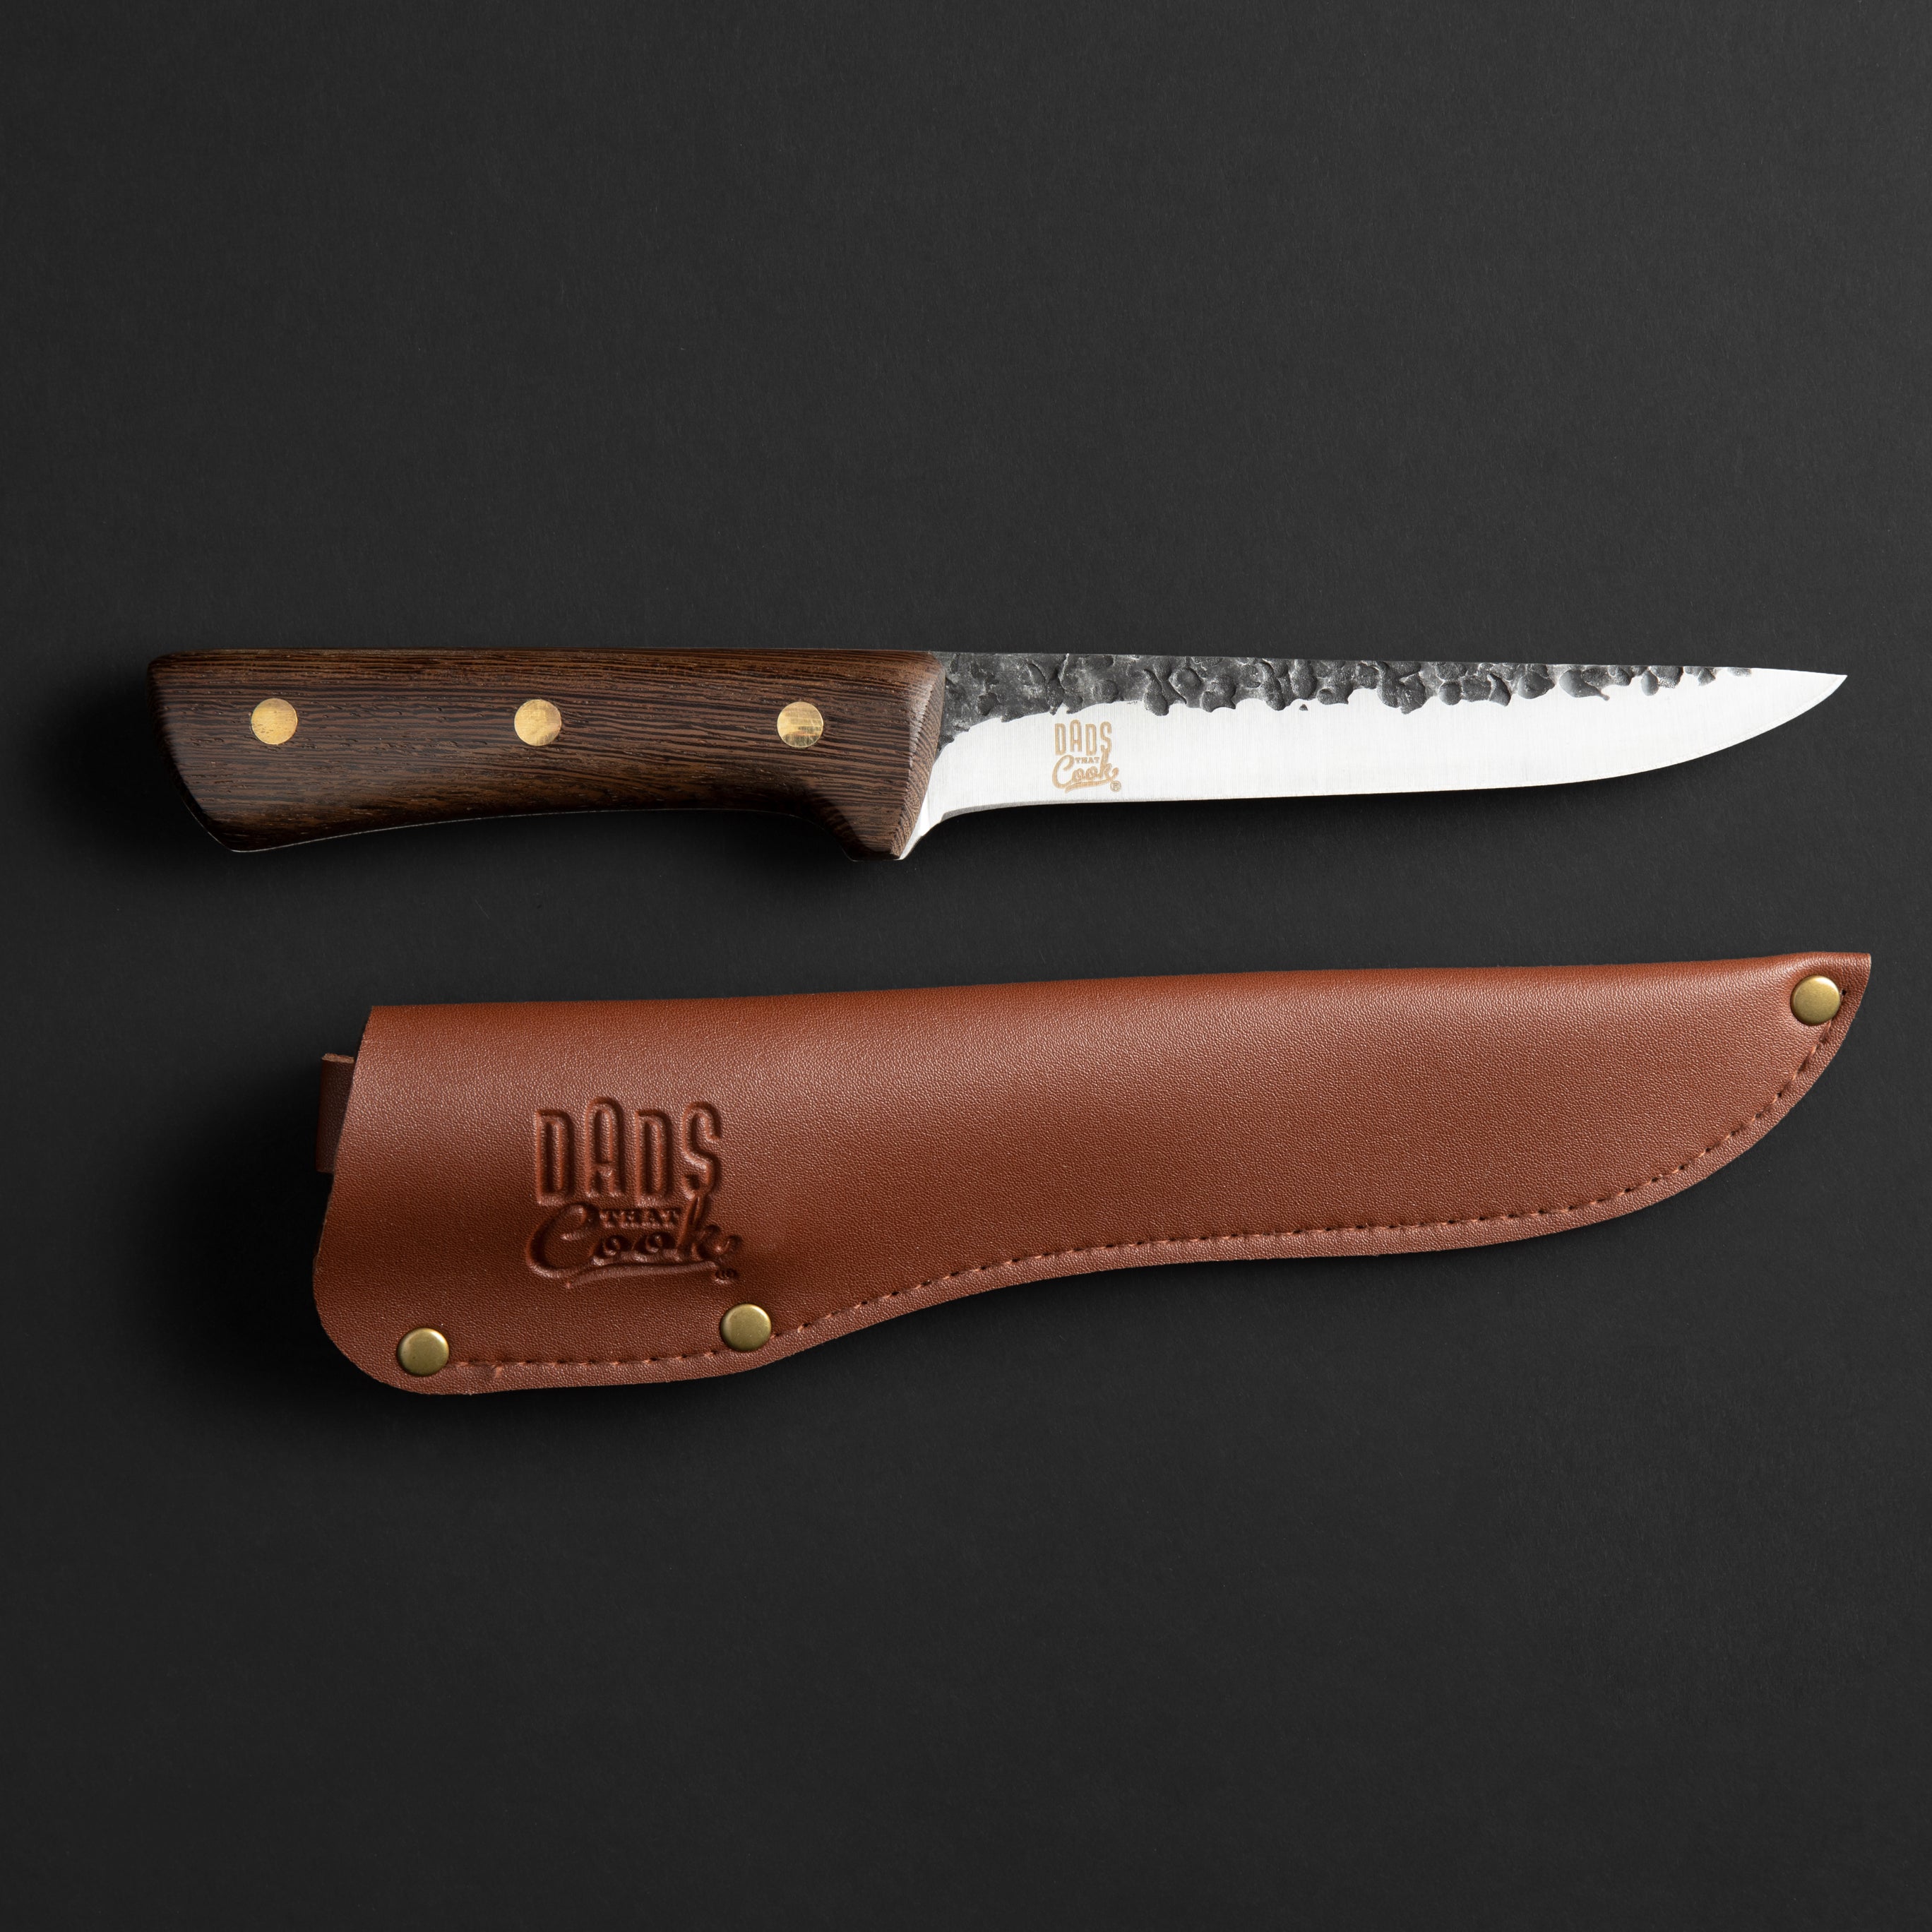 Speedy Sharp Knife Sharpener (98-SSY)